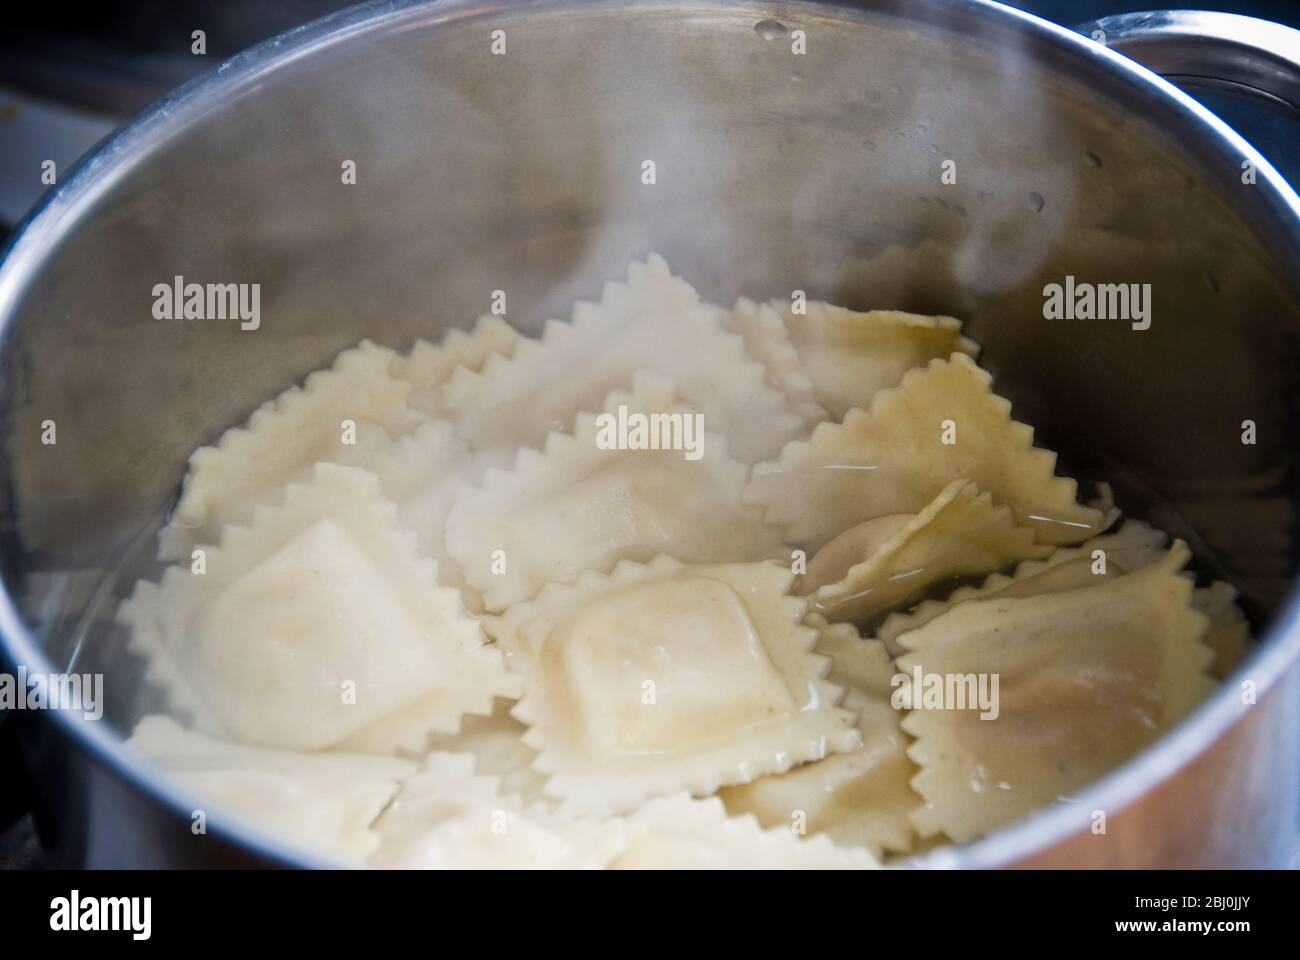 Raviolis cuits dans de l'eau bouillante dans une poêle en acier inoxydable Banque D'Images